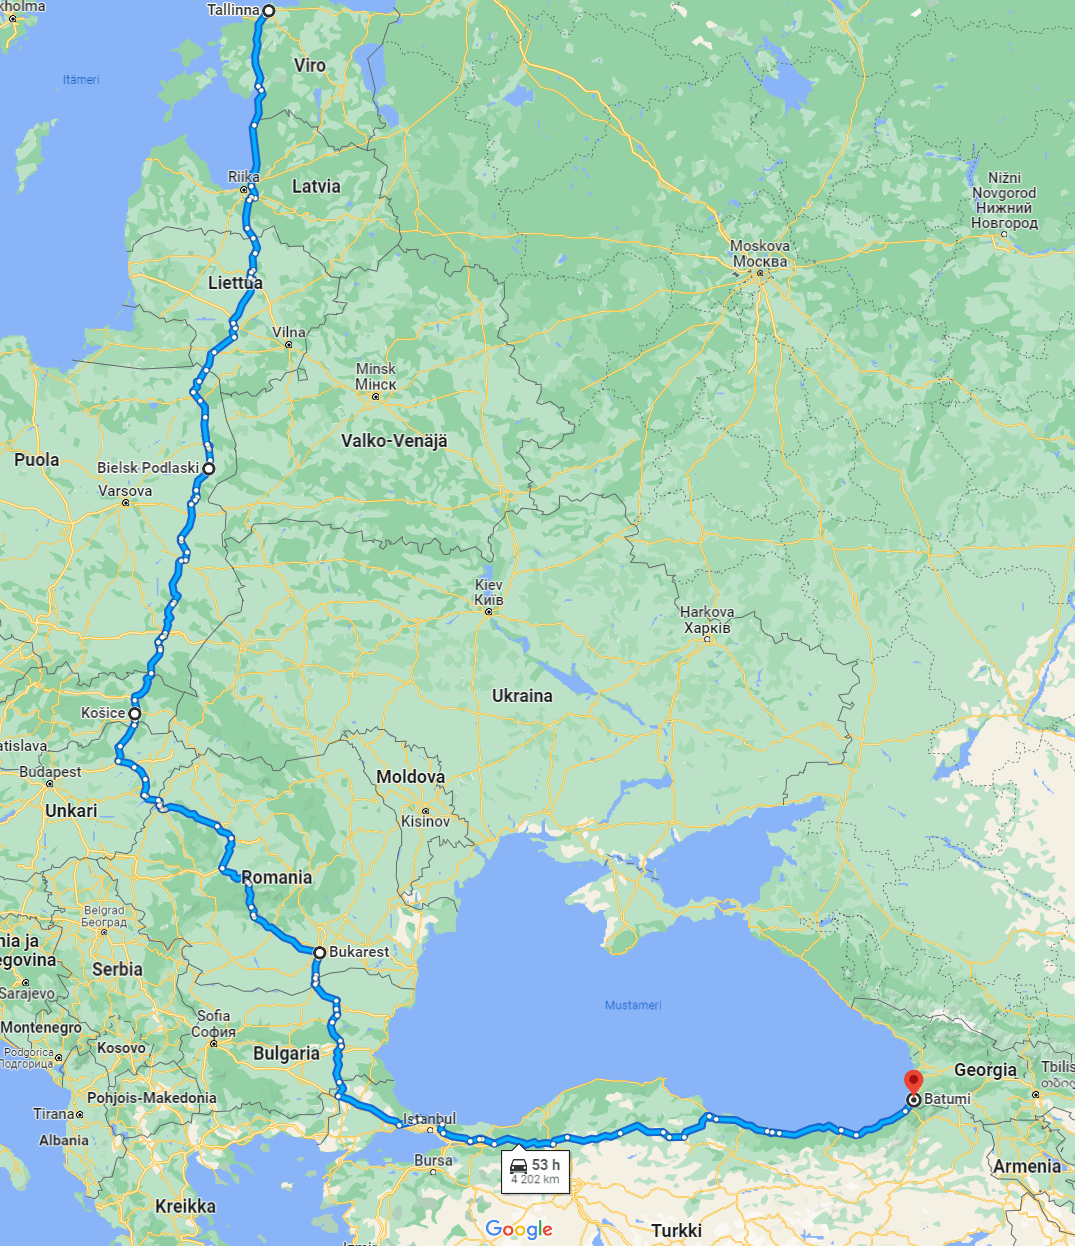 Tallinna-Batumi -ajoreitti Google-kartalla.